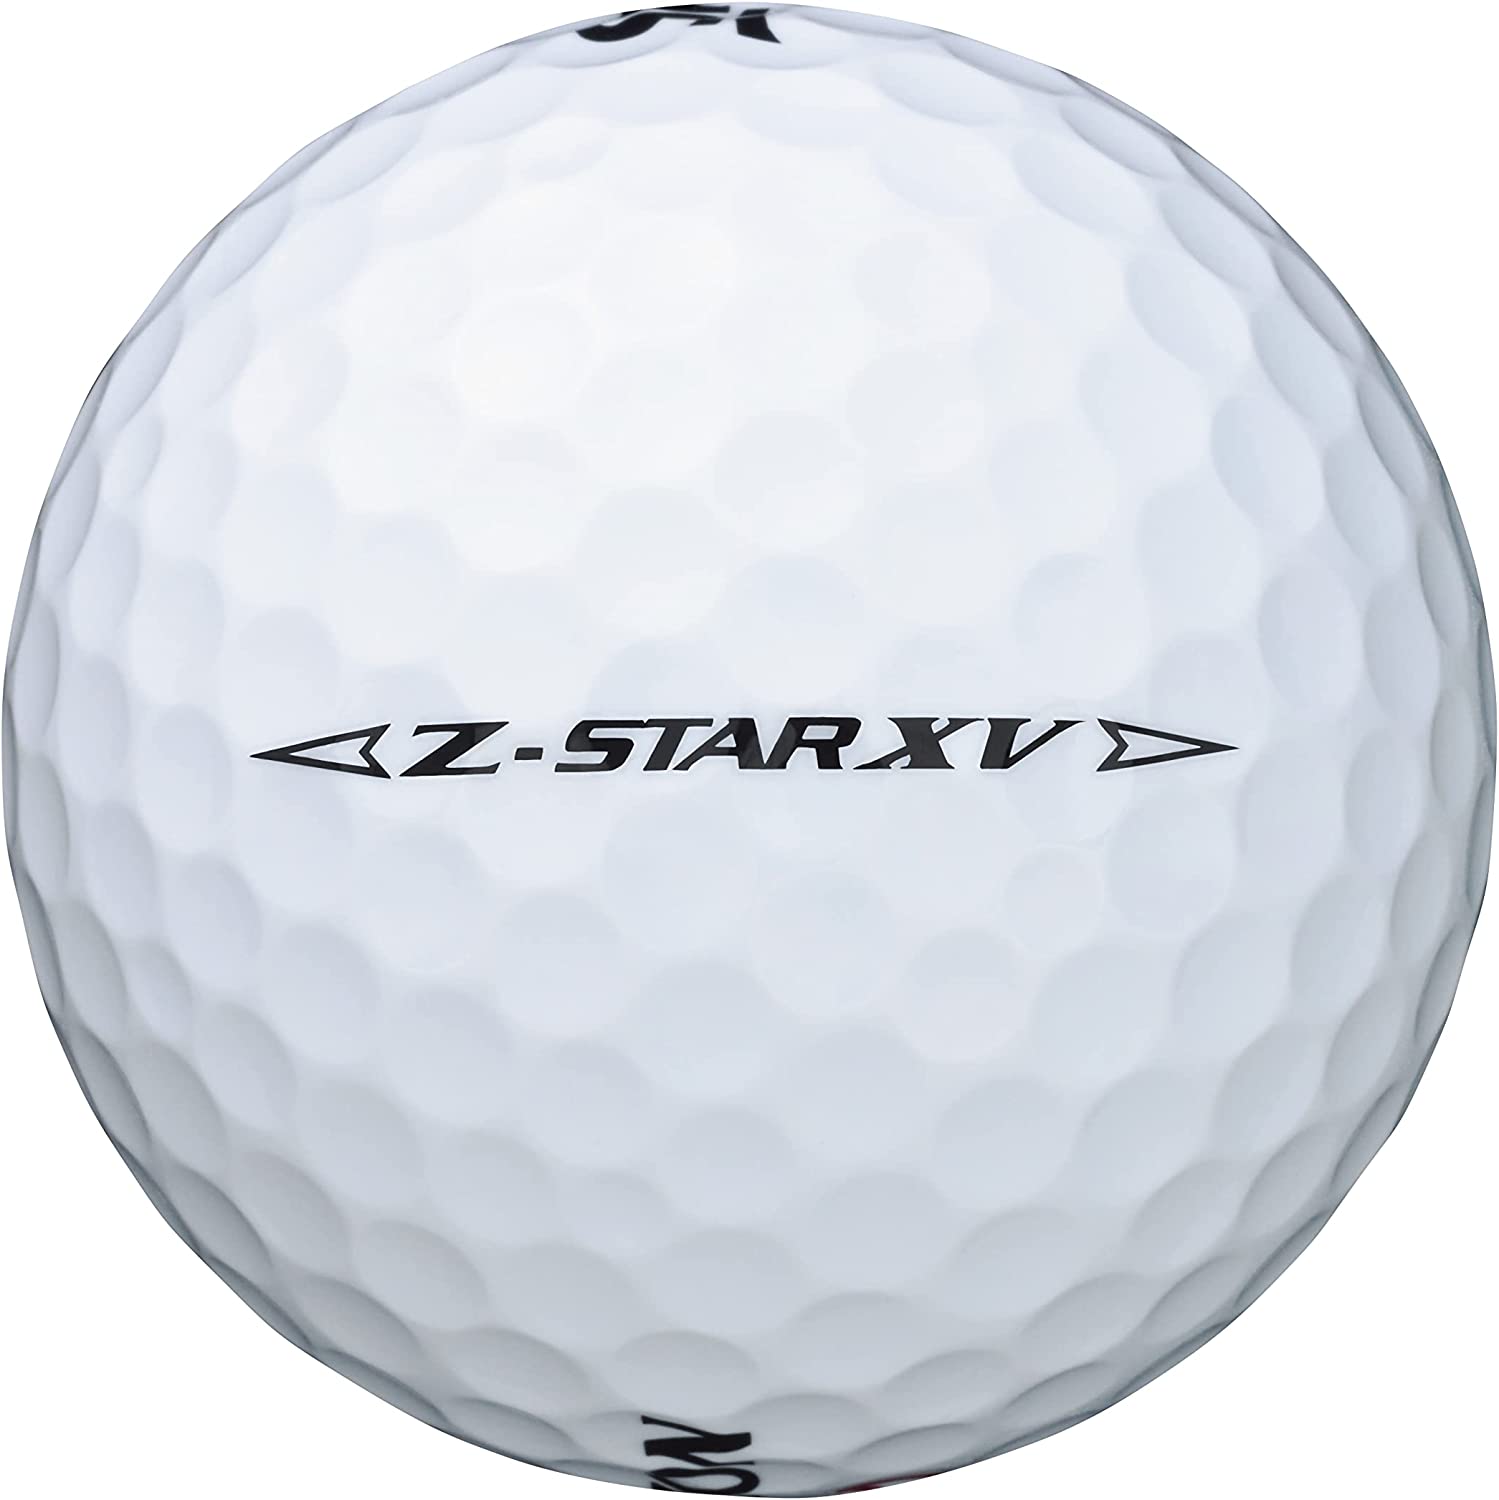 ゴルフボール 1ダース DUNLOP SRIXON Z-STAR XV ダンロップ スリクソン